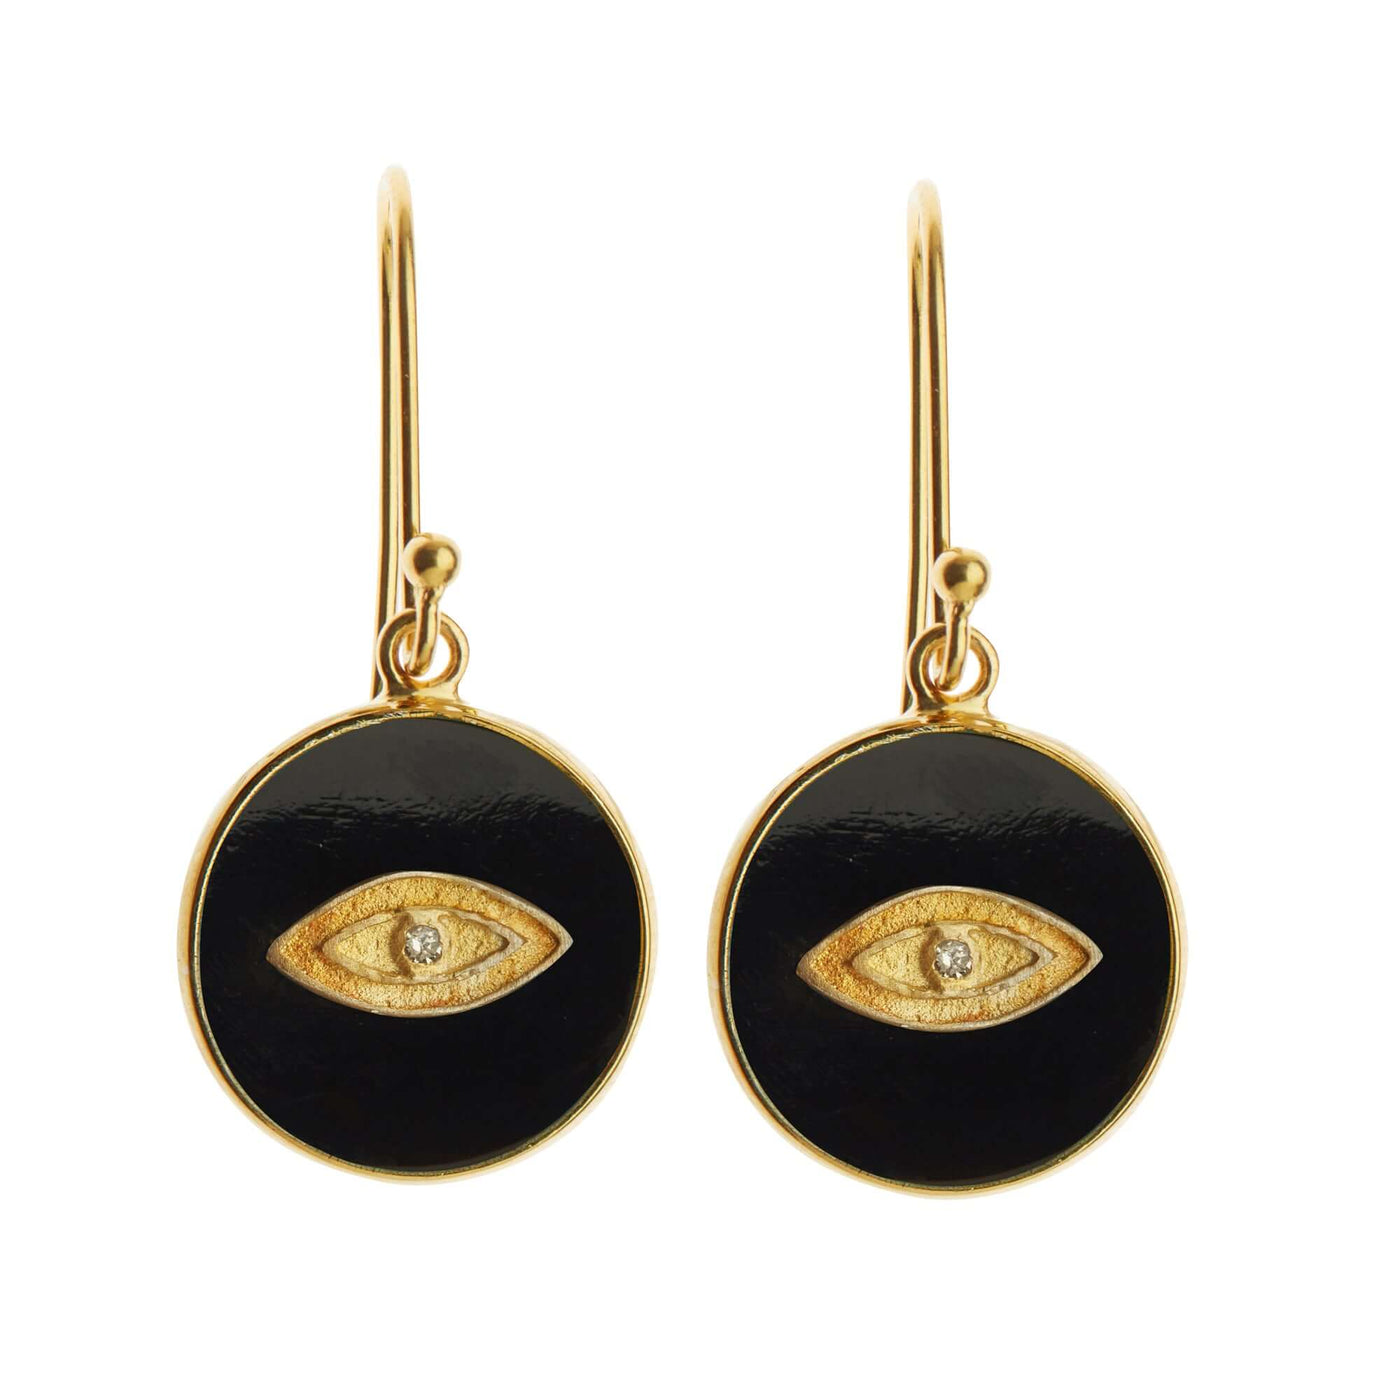 All Seeing Eye Earrings with Black Onyx - Eye M by Ileana Makri